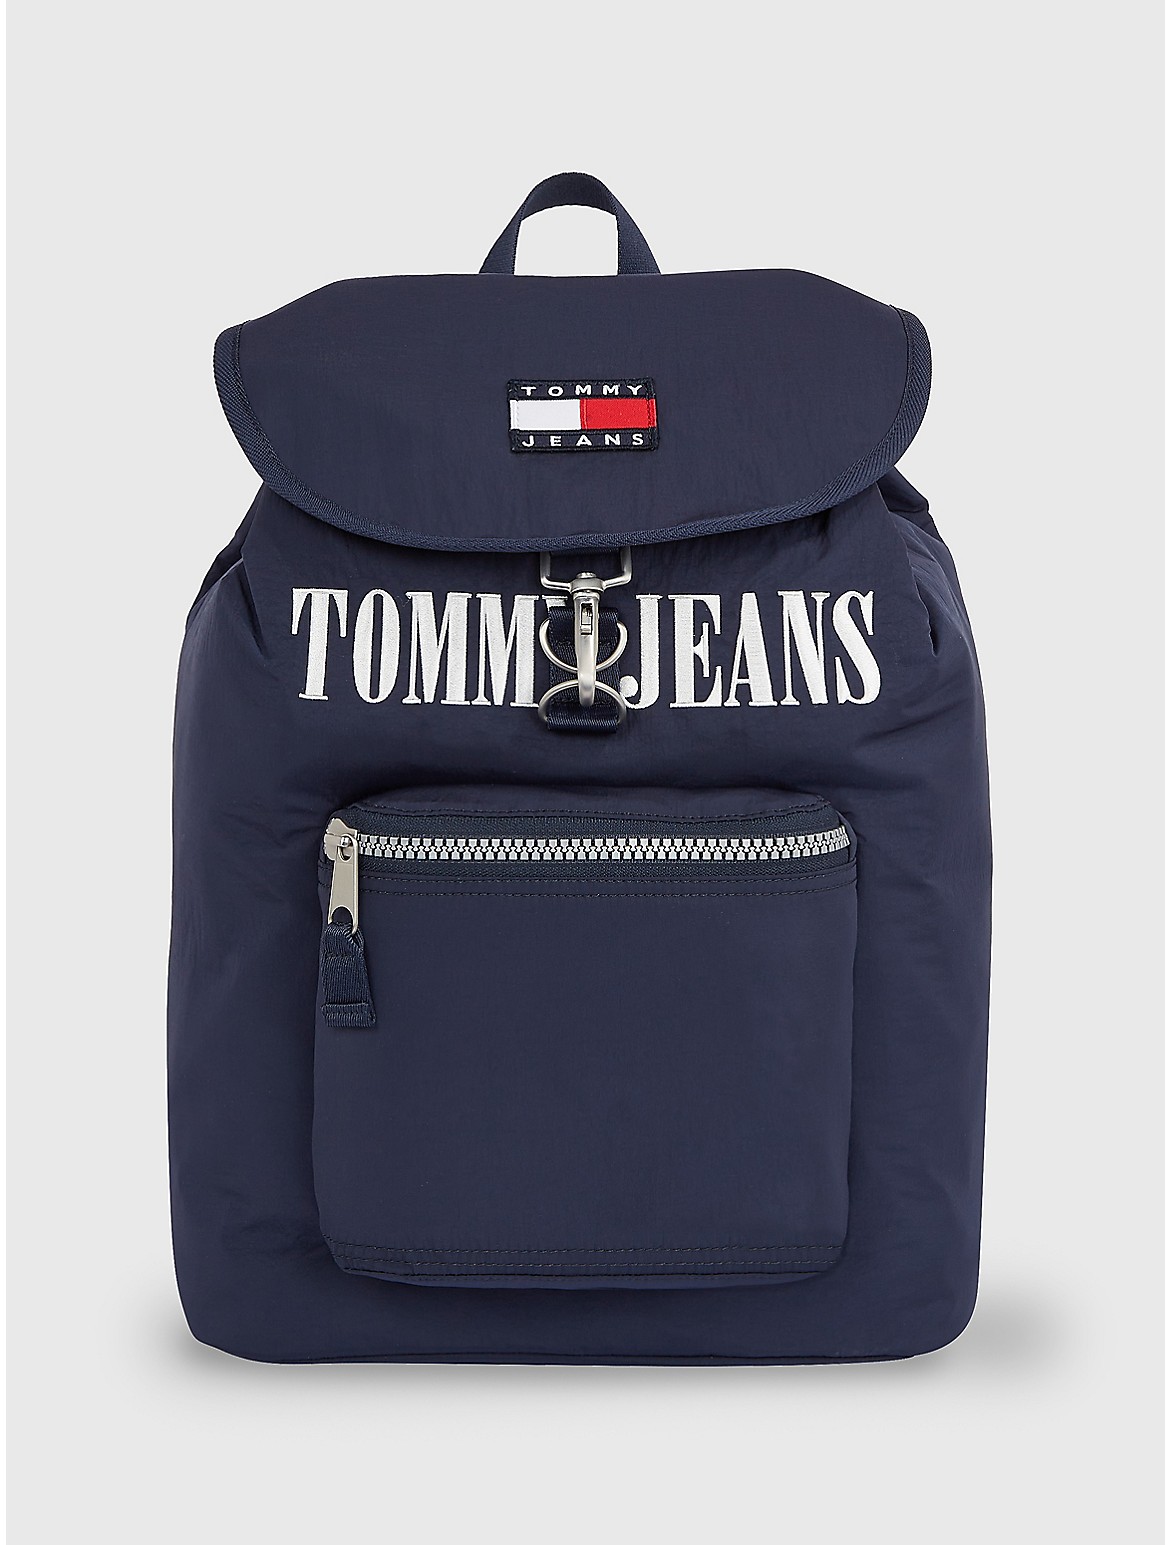 Tommy Hilfiger Men's TJ Heritage Flap Backpack - Blue